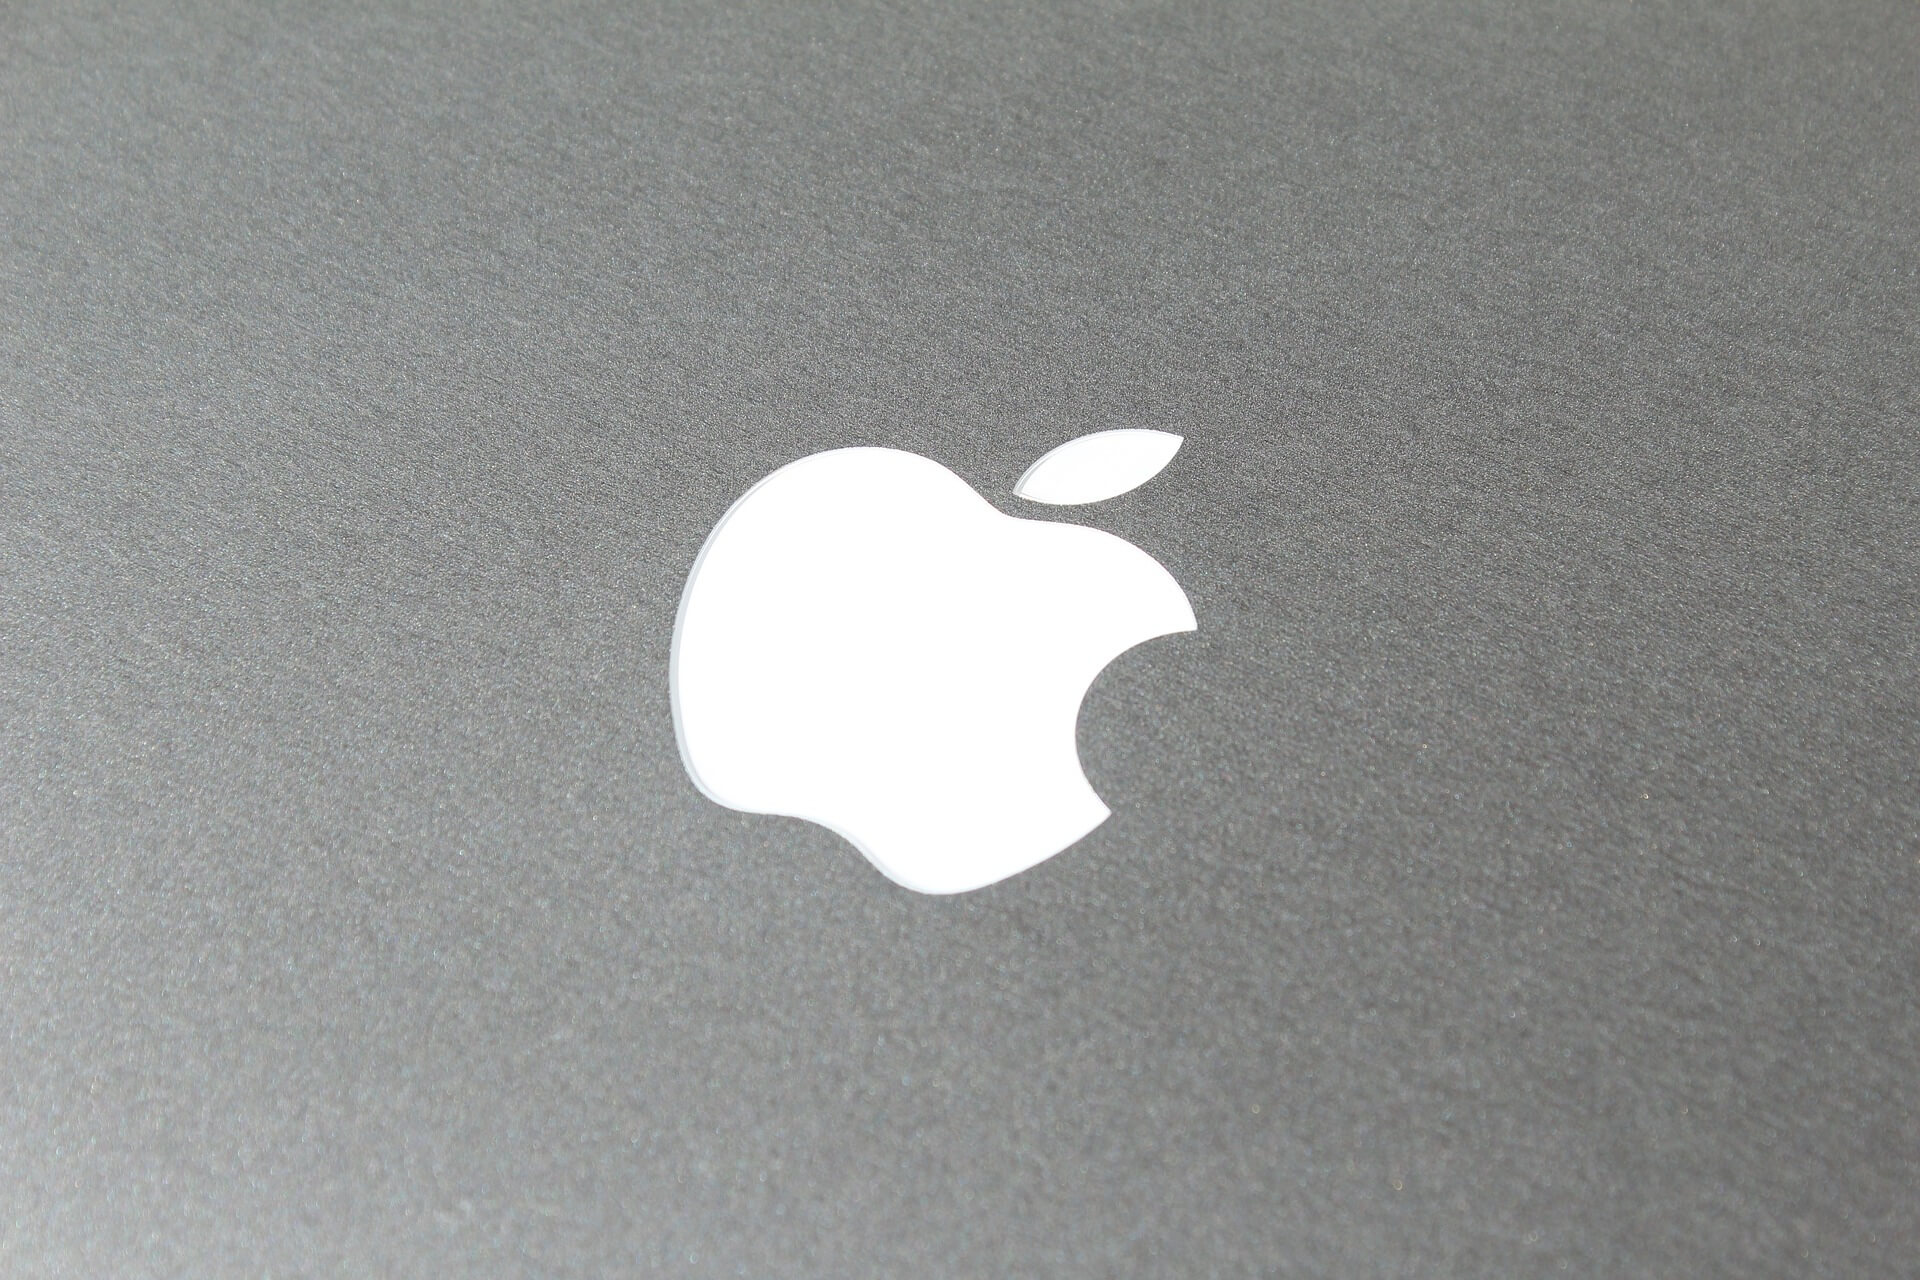 Apple: Lanzan tarjeta de ahorro en colaboración con Goldman Sachs